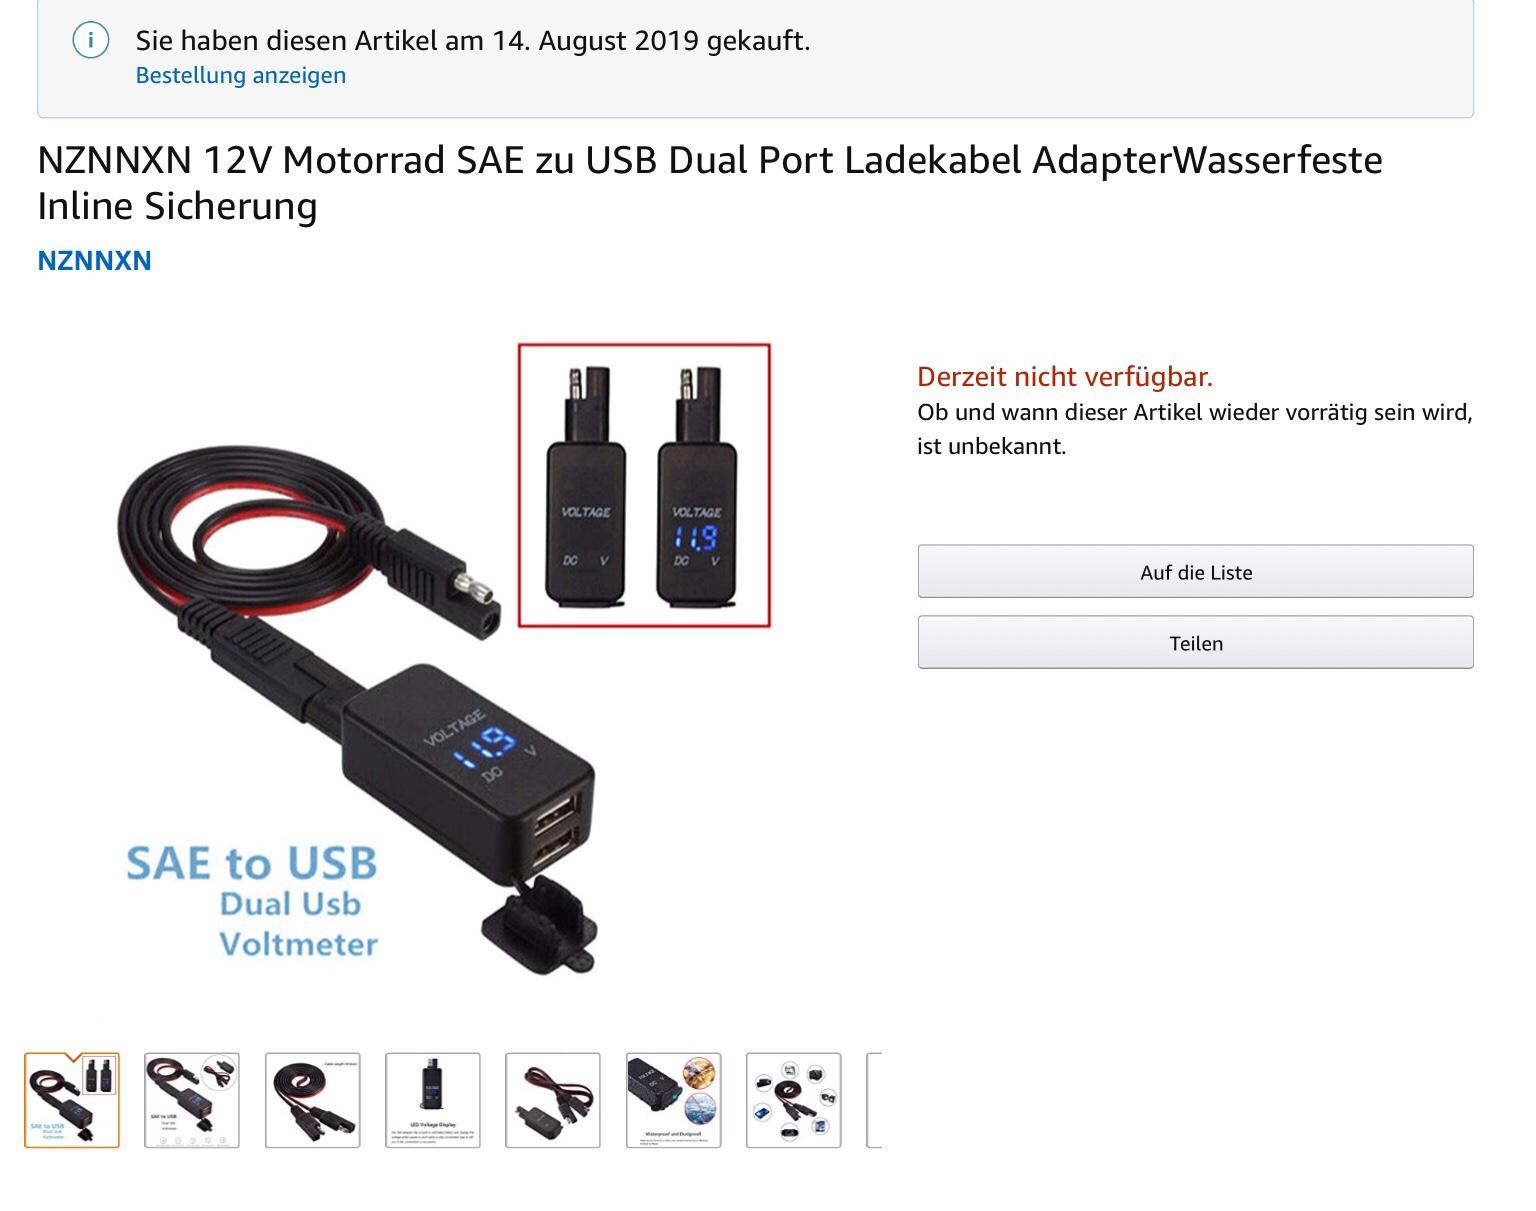 NZNNXN 12V Motorrad SAE zu USB Dual Port Ladekabel AdapterWasserfeste Inline Sicherung 